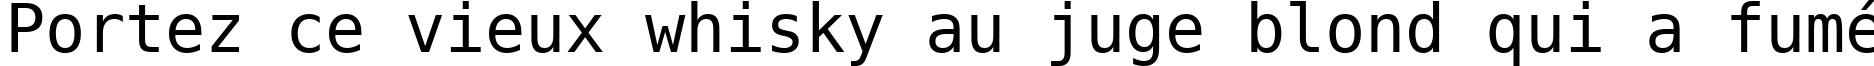 Пример написания шрифтом DejaVu Sans Mono текста на французском